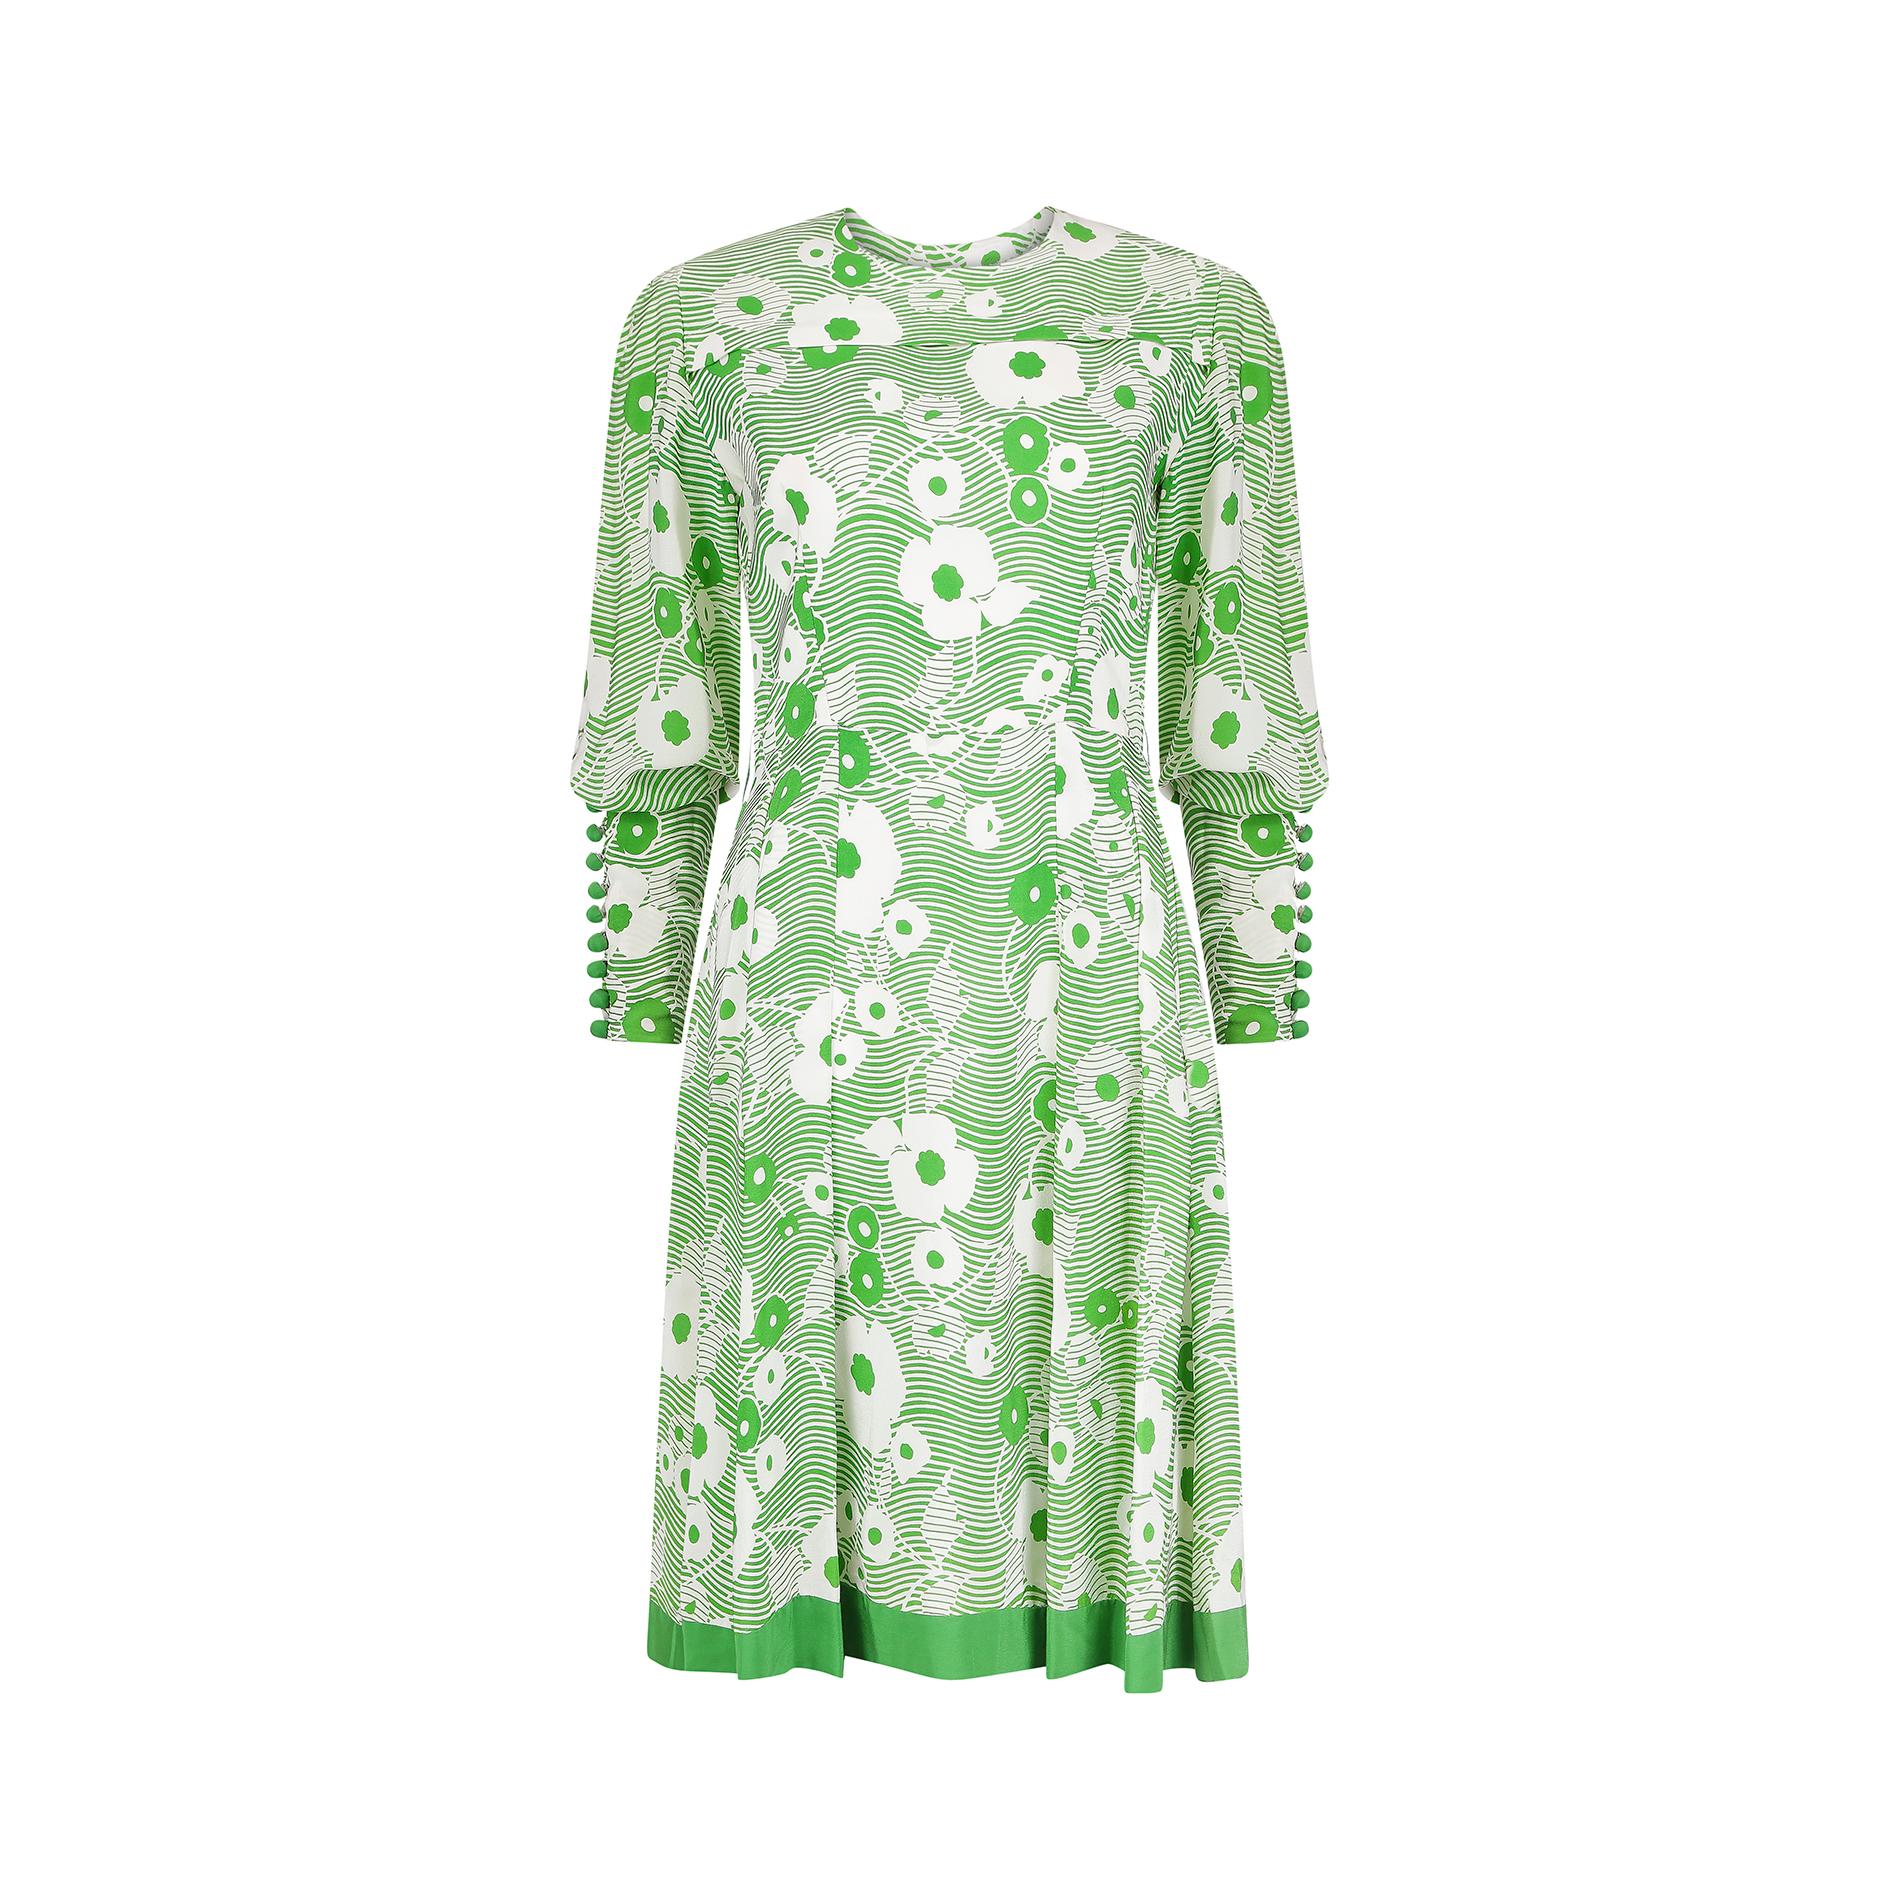 Dieses grün-weiße französische Couture-Kleid aus Seidenkrepp aus den 1970er-Jahren besticht durch sein florales Stoffmuster. Es hat einen sanft gerundeten Ausschnitt und wird am Rücken mit einem original weißen Couture-Reißverschluss mit Haken und